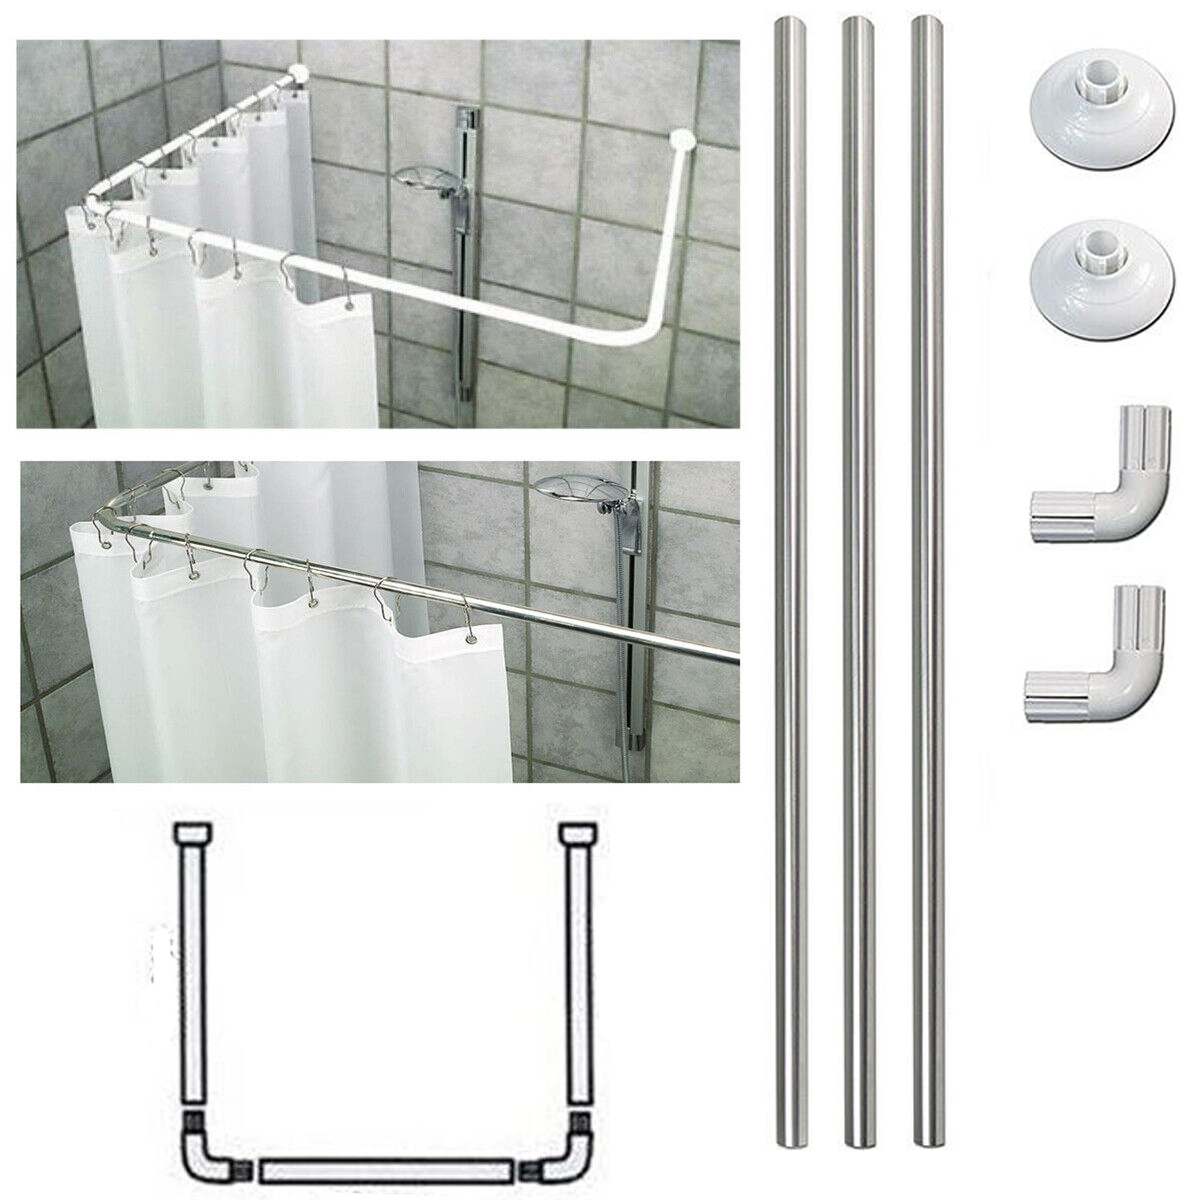 Bastone tubo per tenda doccia vasca 3 lati alluminio bianco